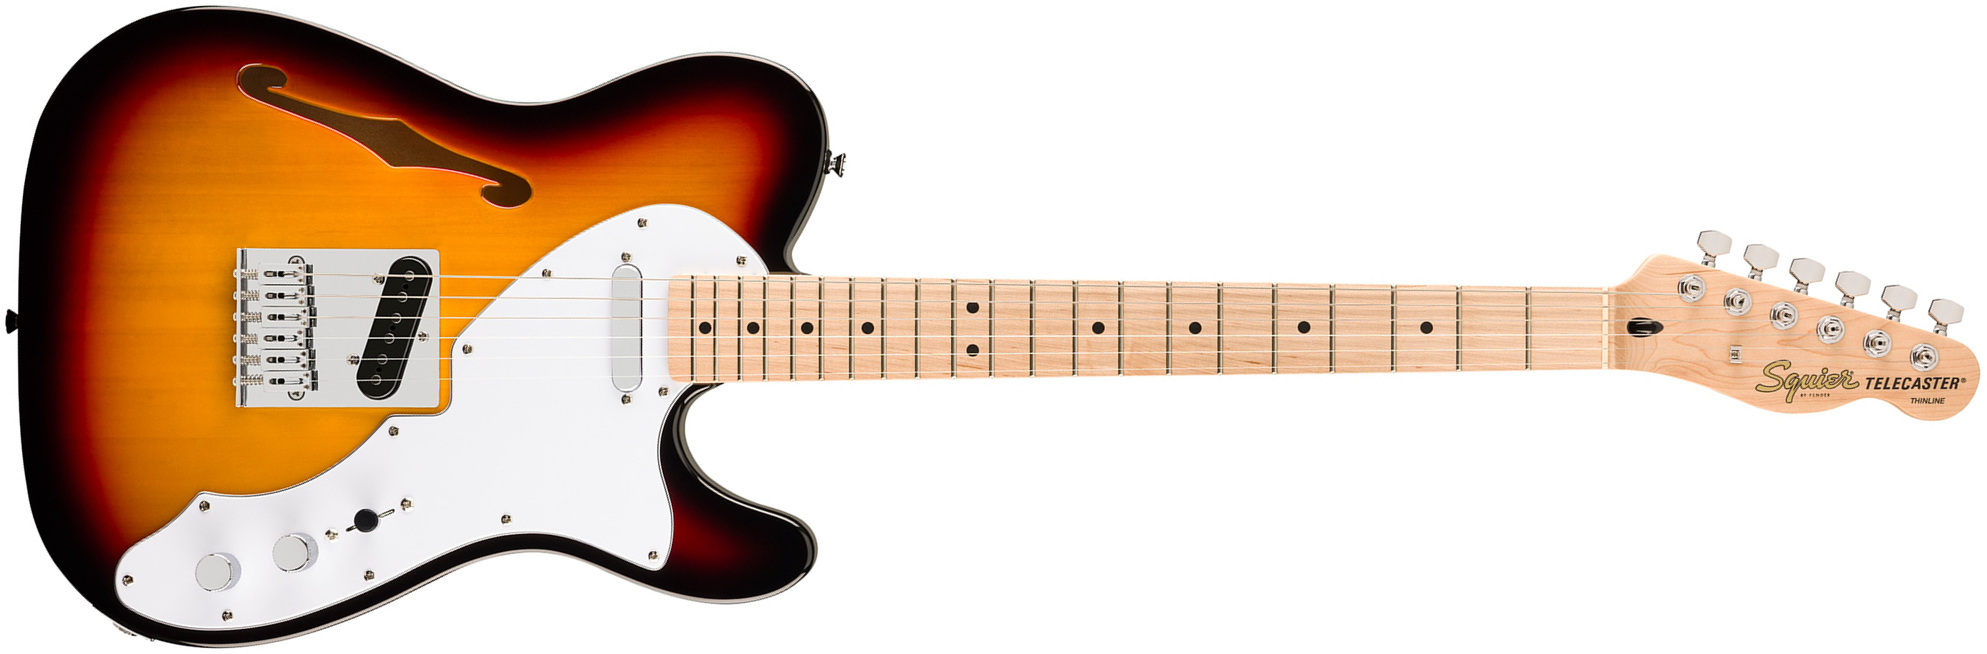 Squier Tele Thinline Affinity 2s Ht Mn - 3-color Sunburst - Semi hollow elektriche gitaar - Main picture